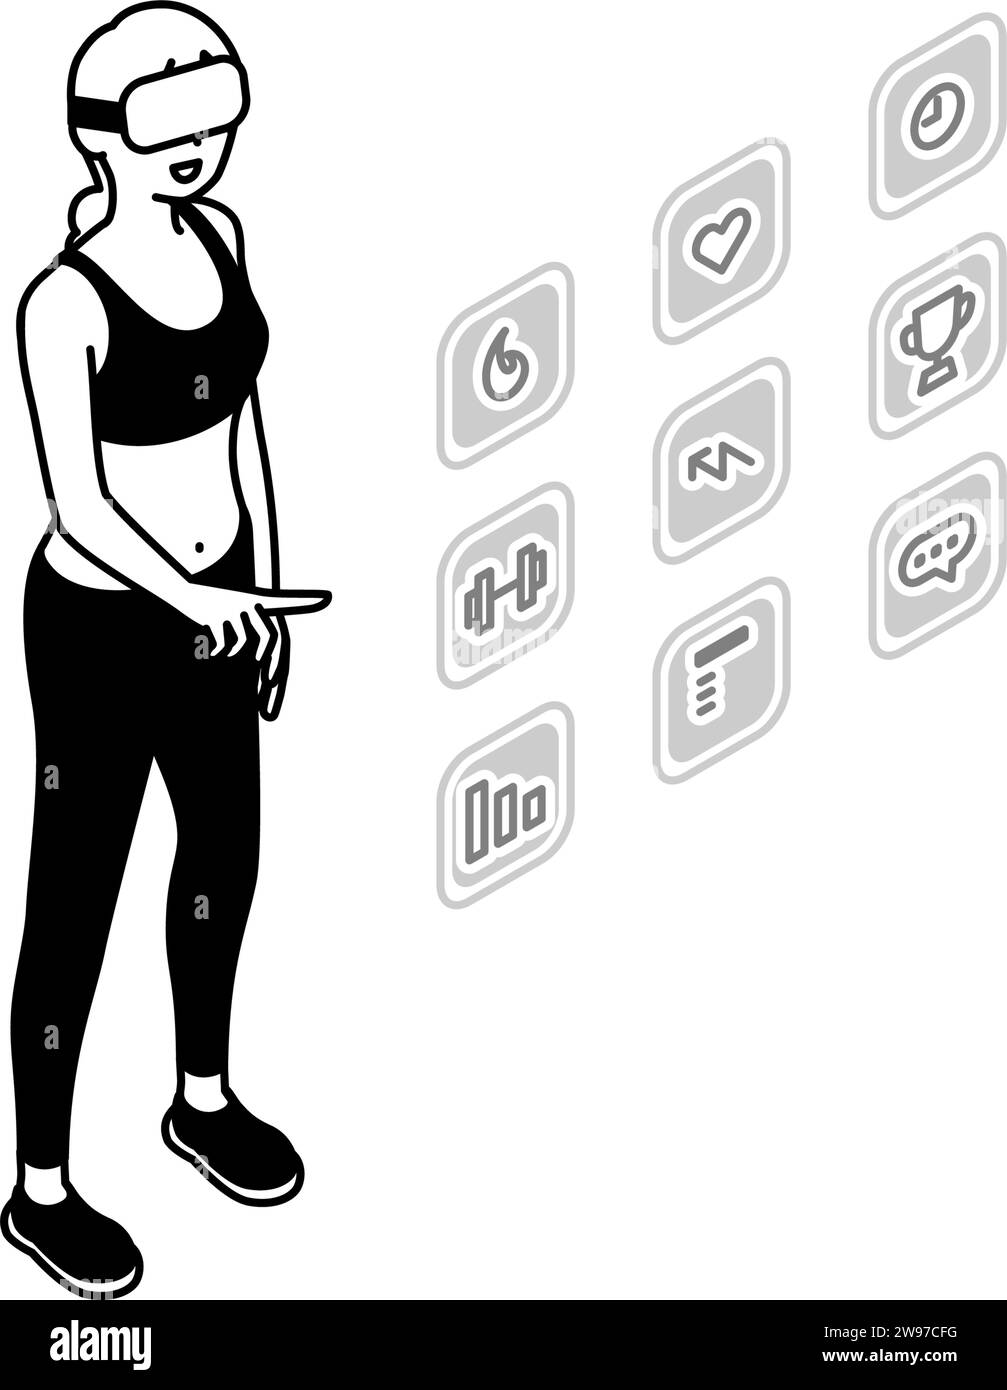 Femme touchant l'icône de menu dans les airs, application de fitness VR, portant des lunettes VR, illustration Vector Illustration de Vecteur